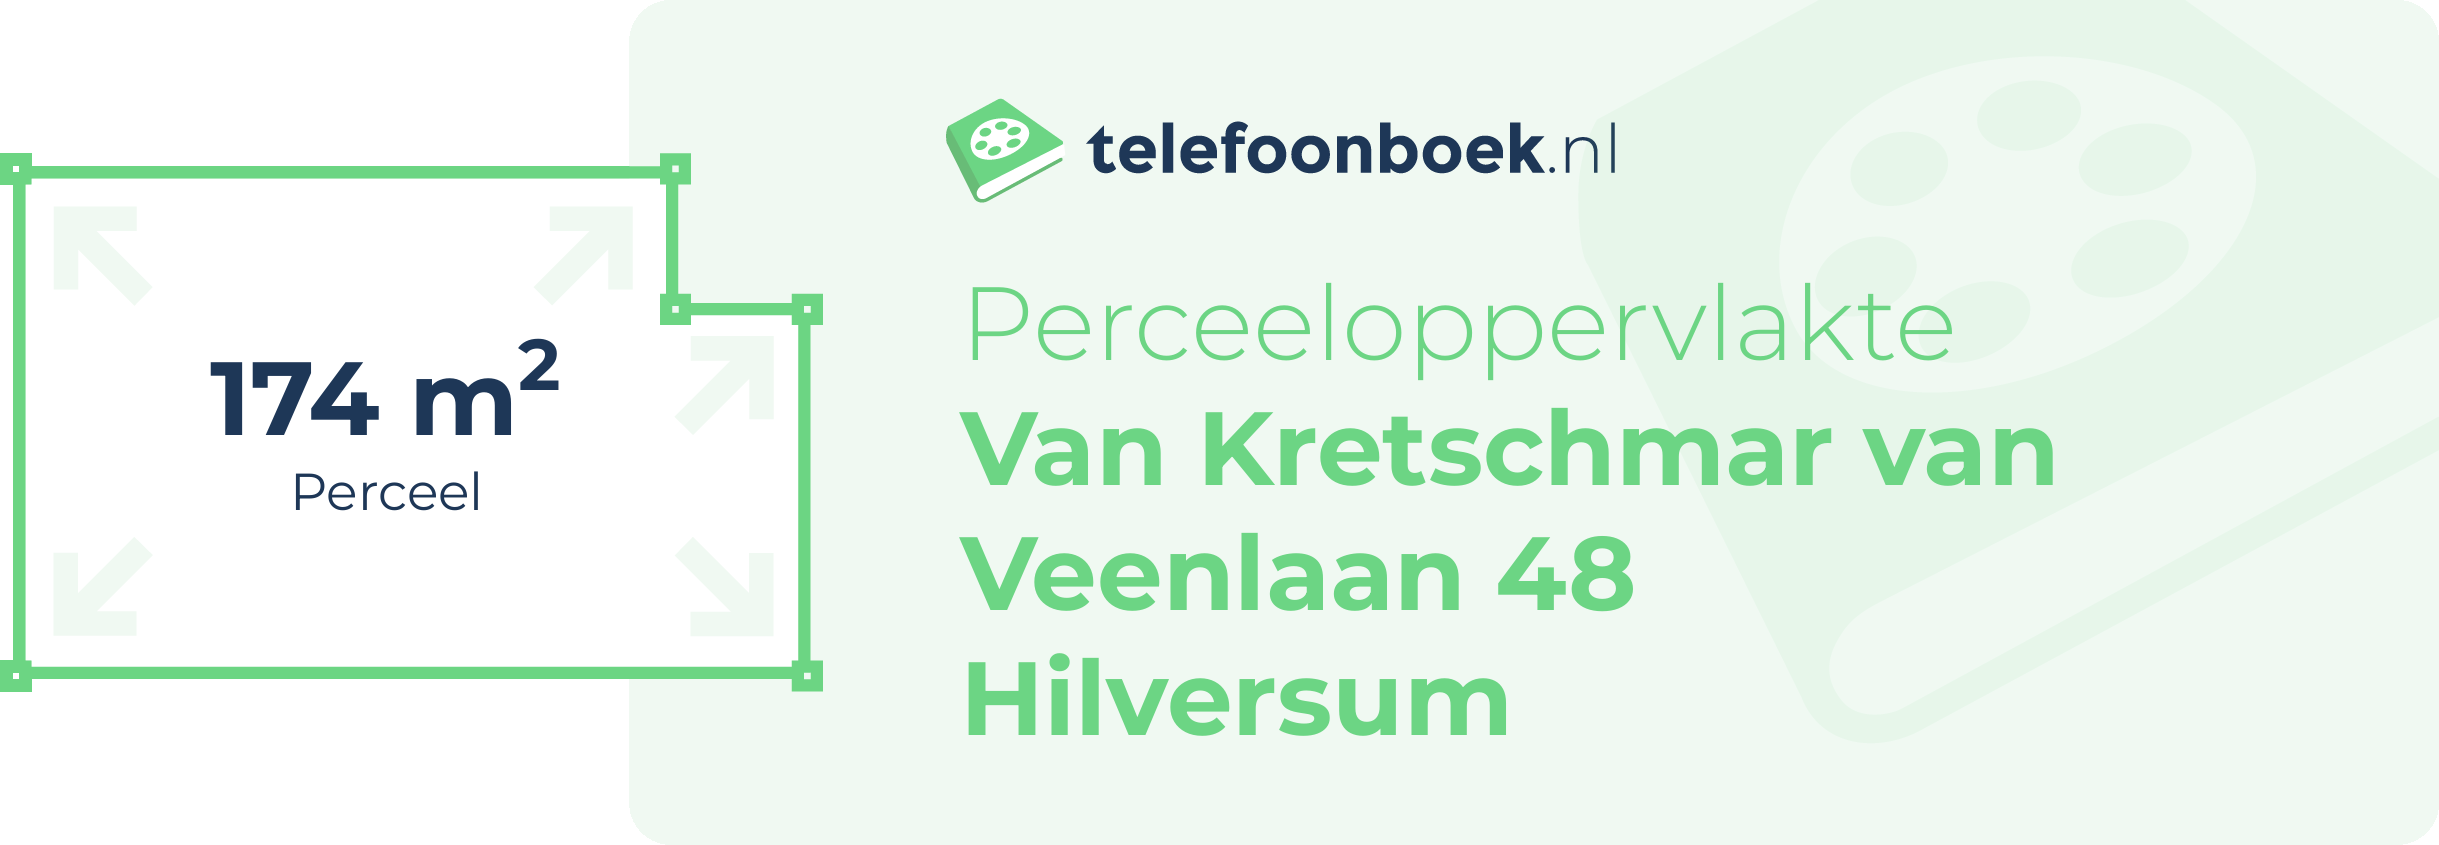 Perceeloppervlakte Van Kretschmar Van Veenlaan 48 Hilversum